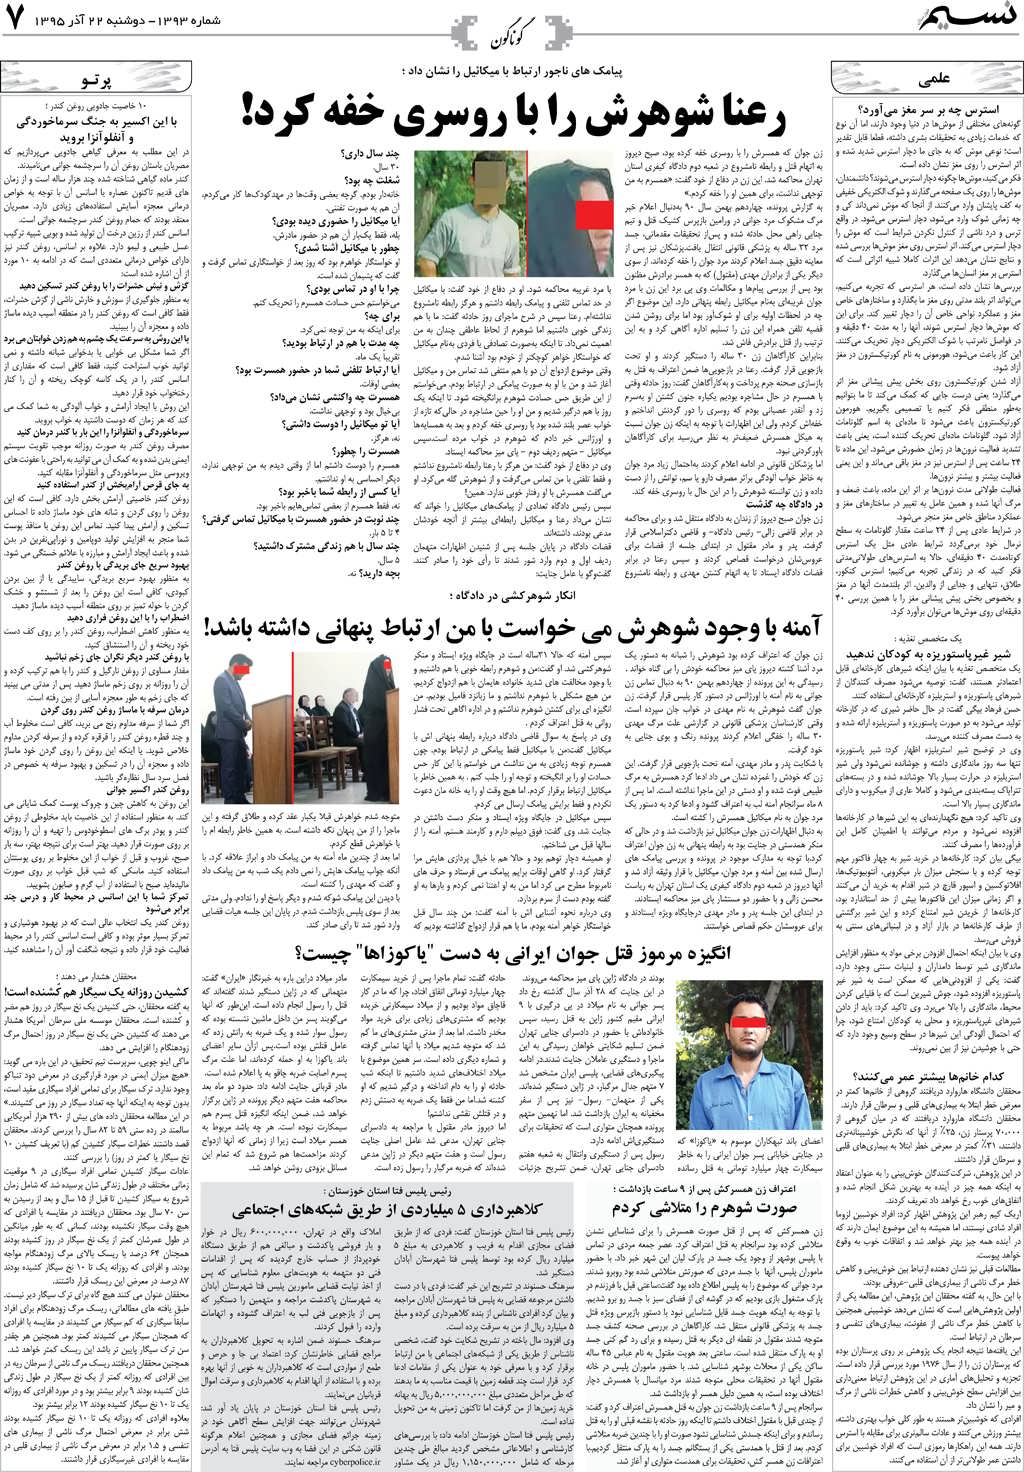 صفحه گوناگون روزنامه نسیم شماره 1393